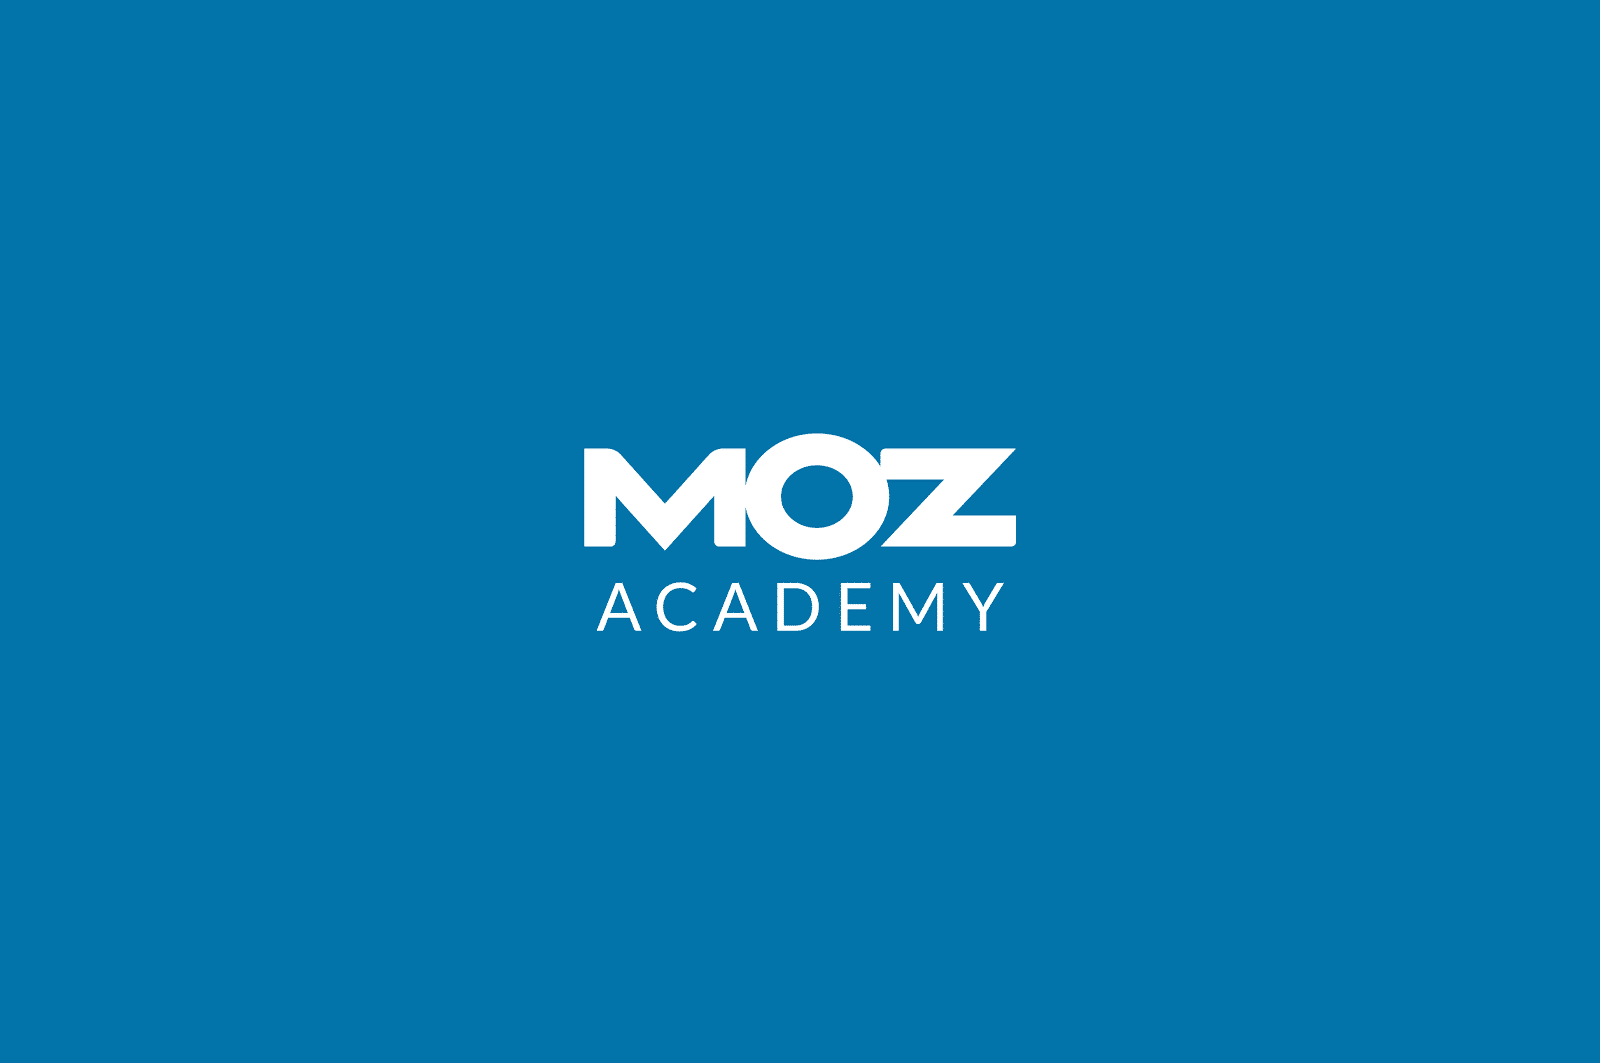 MOZ Academy Training COVID 19